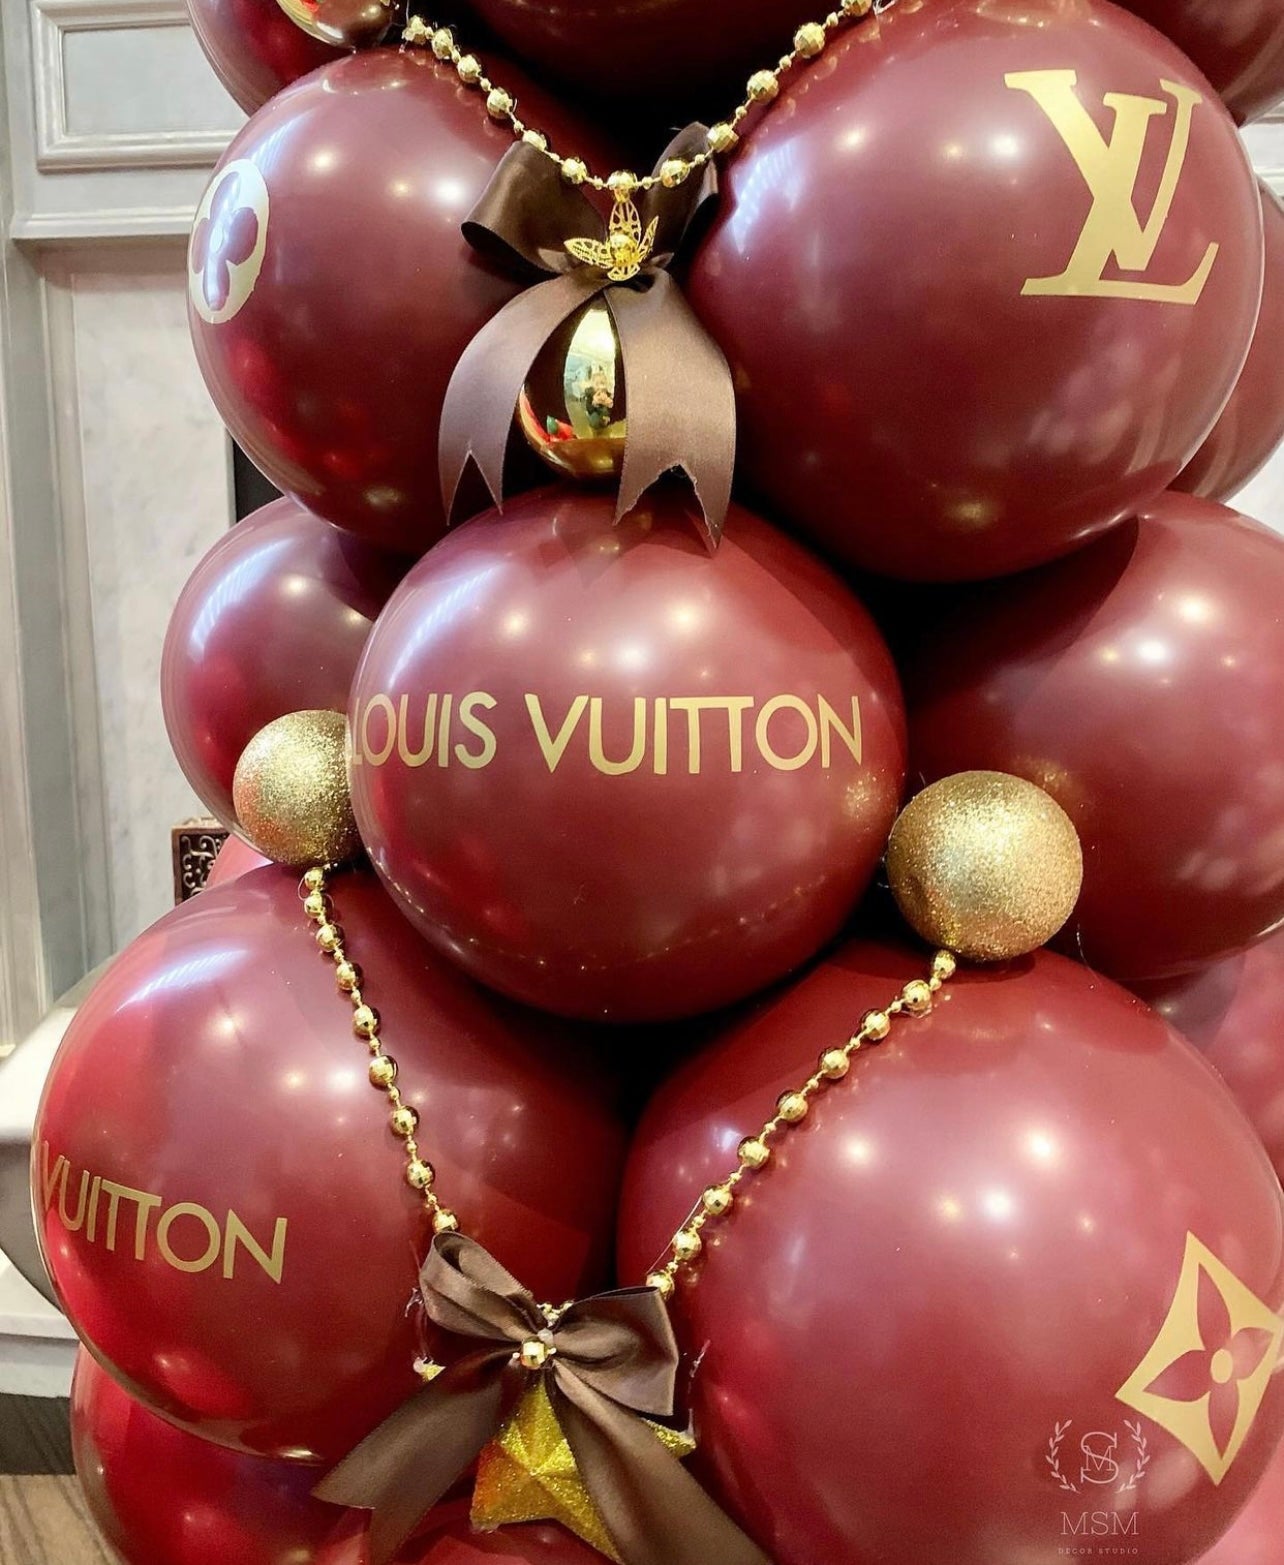 Louis Vuitton Theme Birthday Balloons Decoration